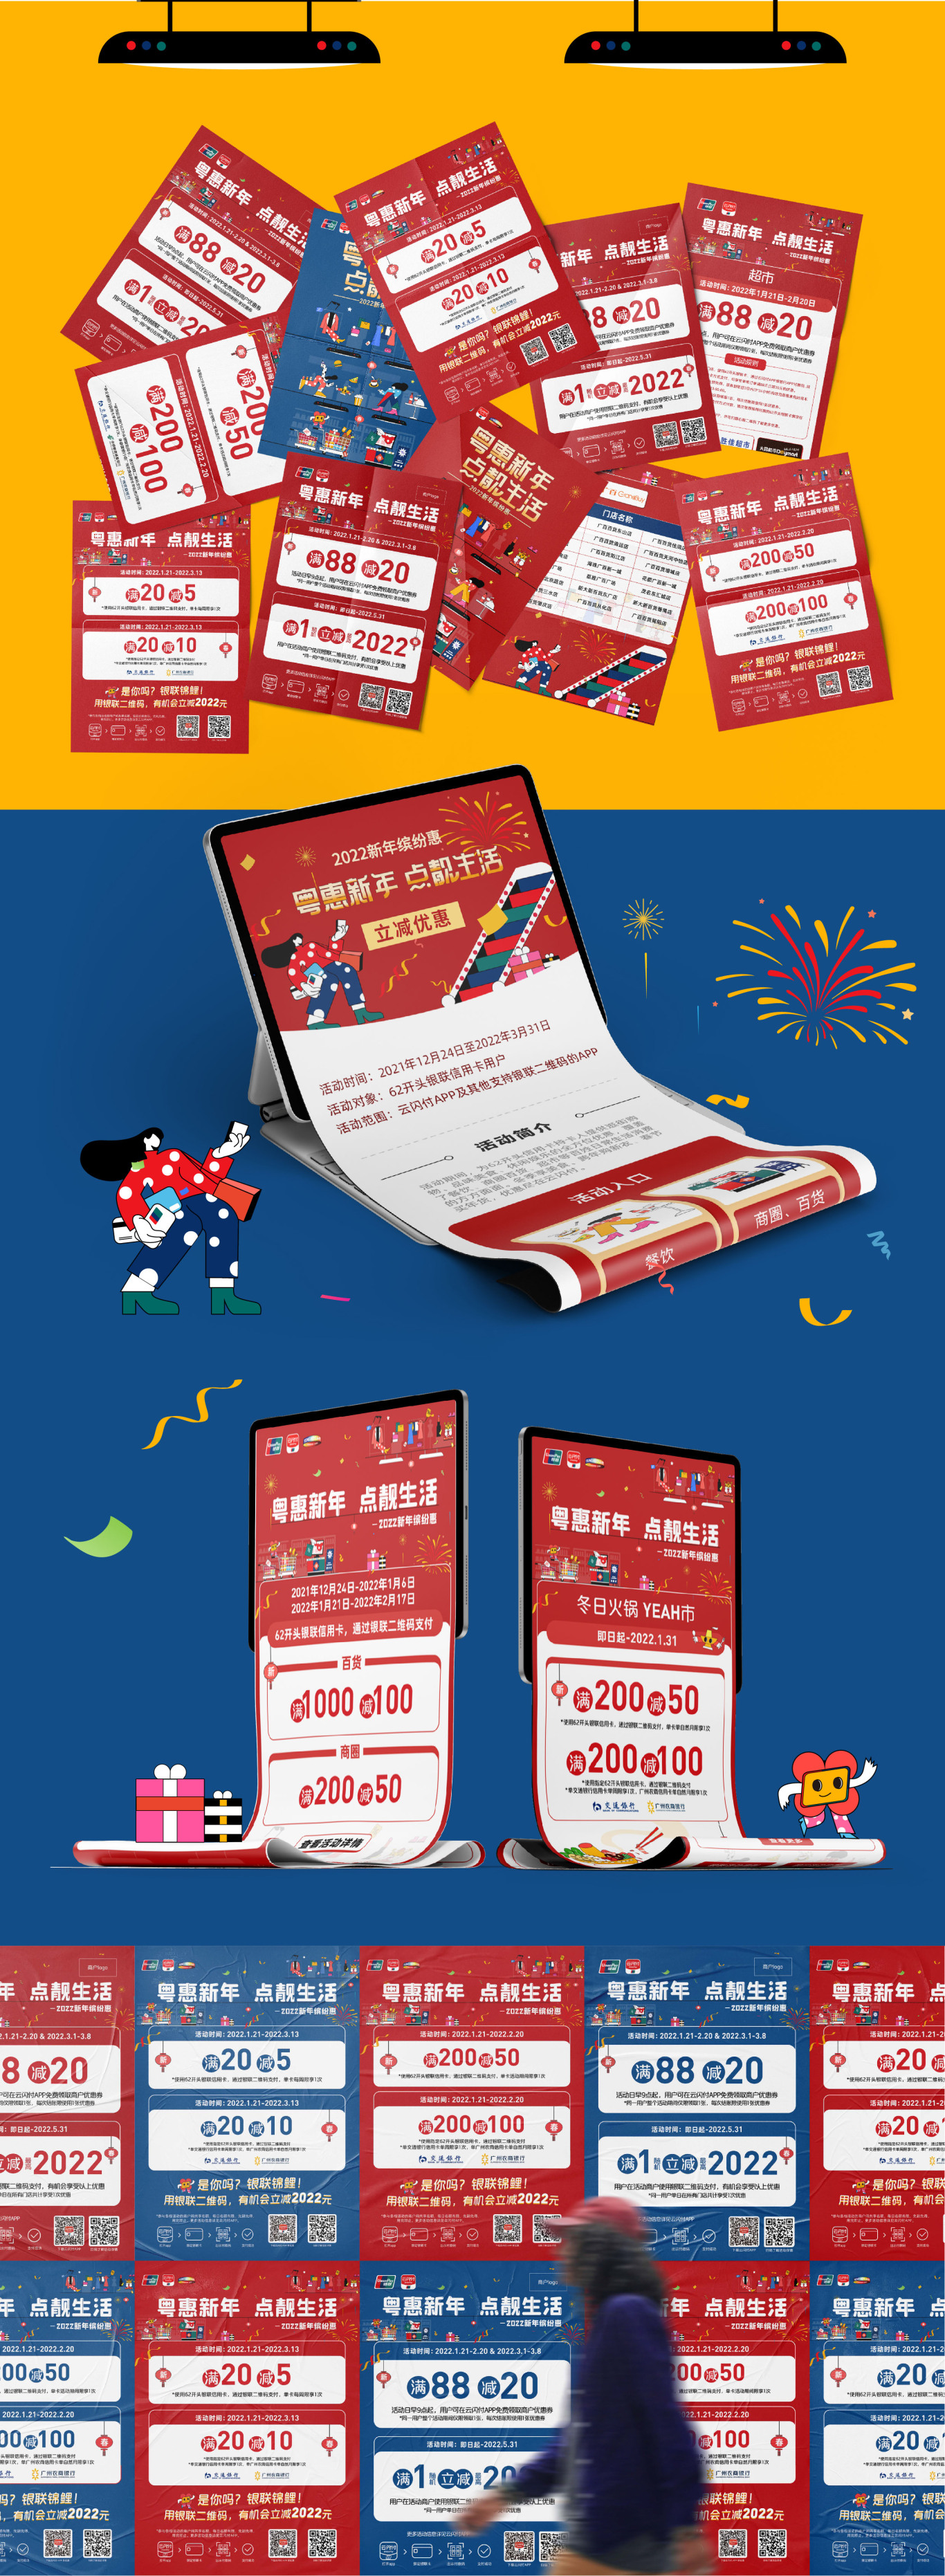 廣東銀聯2022年跨年購物季活動一一粵惠新年，點靚生活圖3